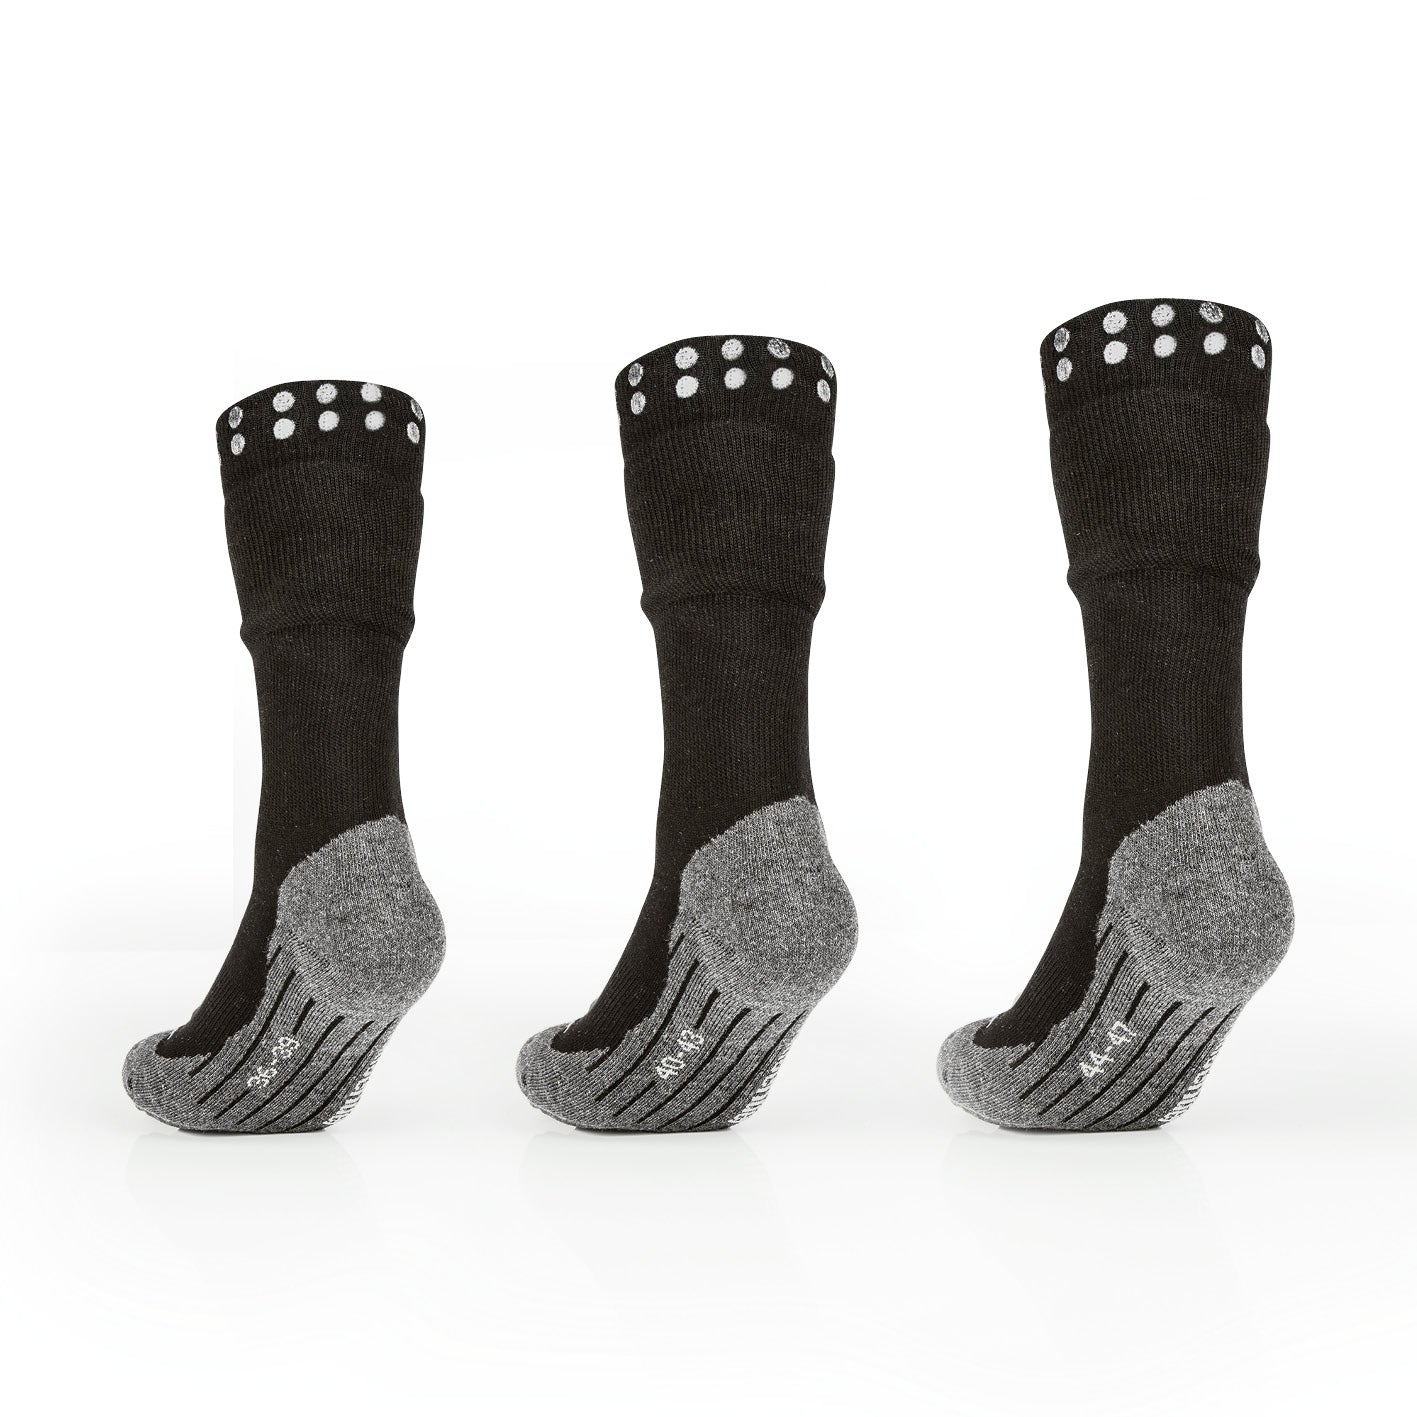 Funktions-Socke mit Doppelschaft - 2er-Set - Größe 36-39